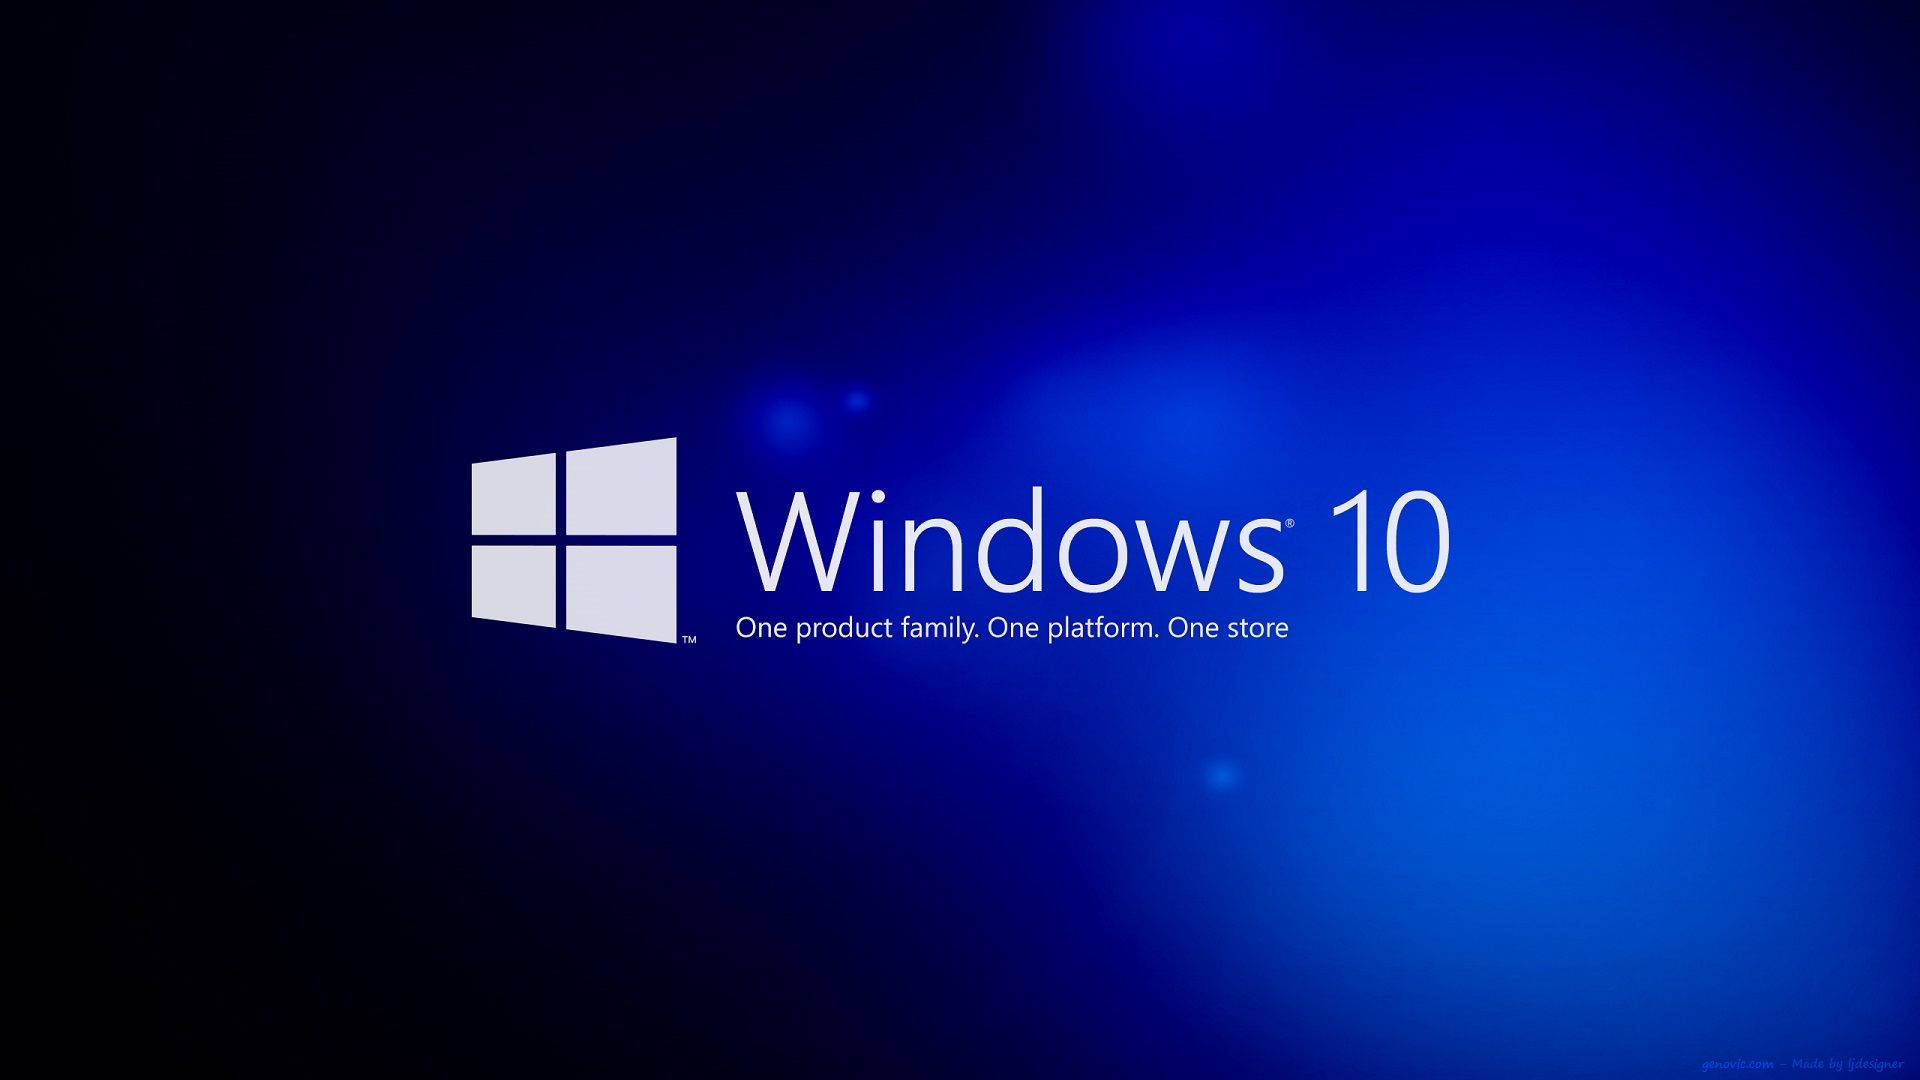 Windows 10 Hd Gradient Blue Background